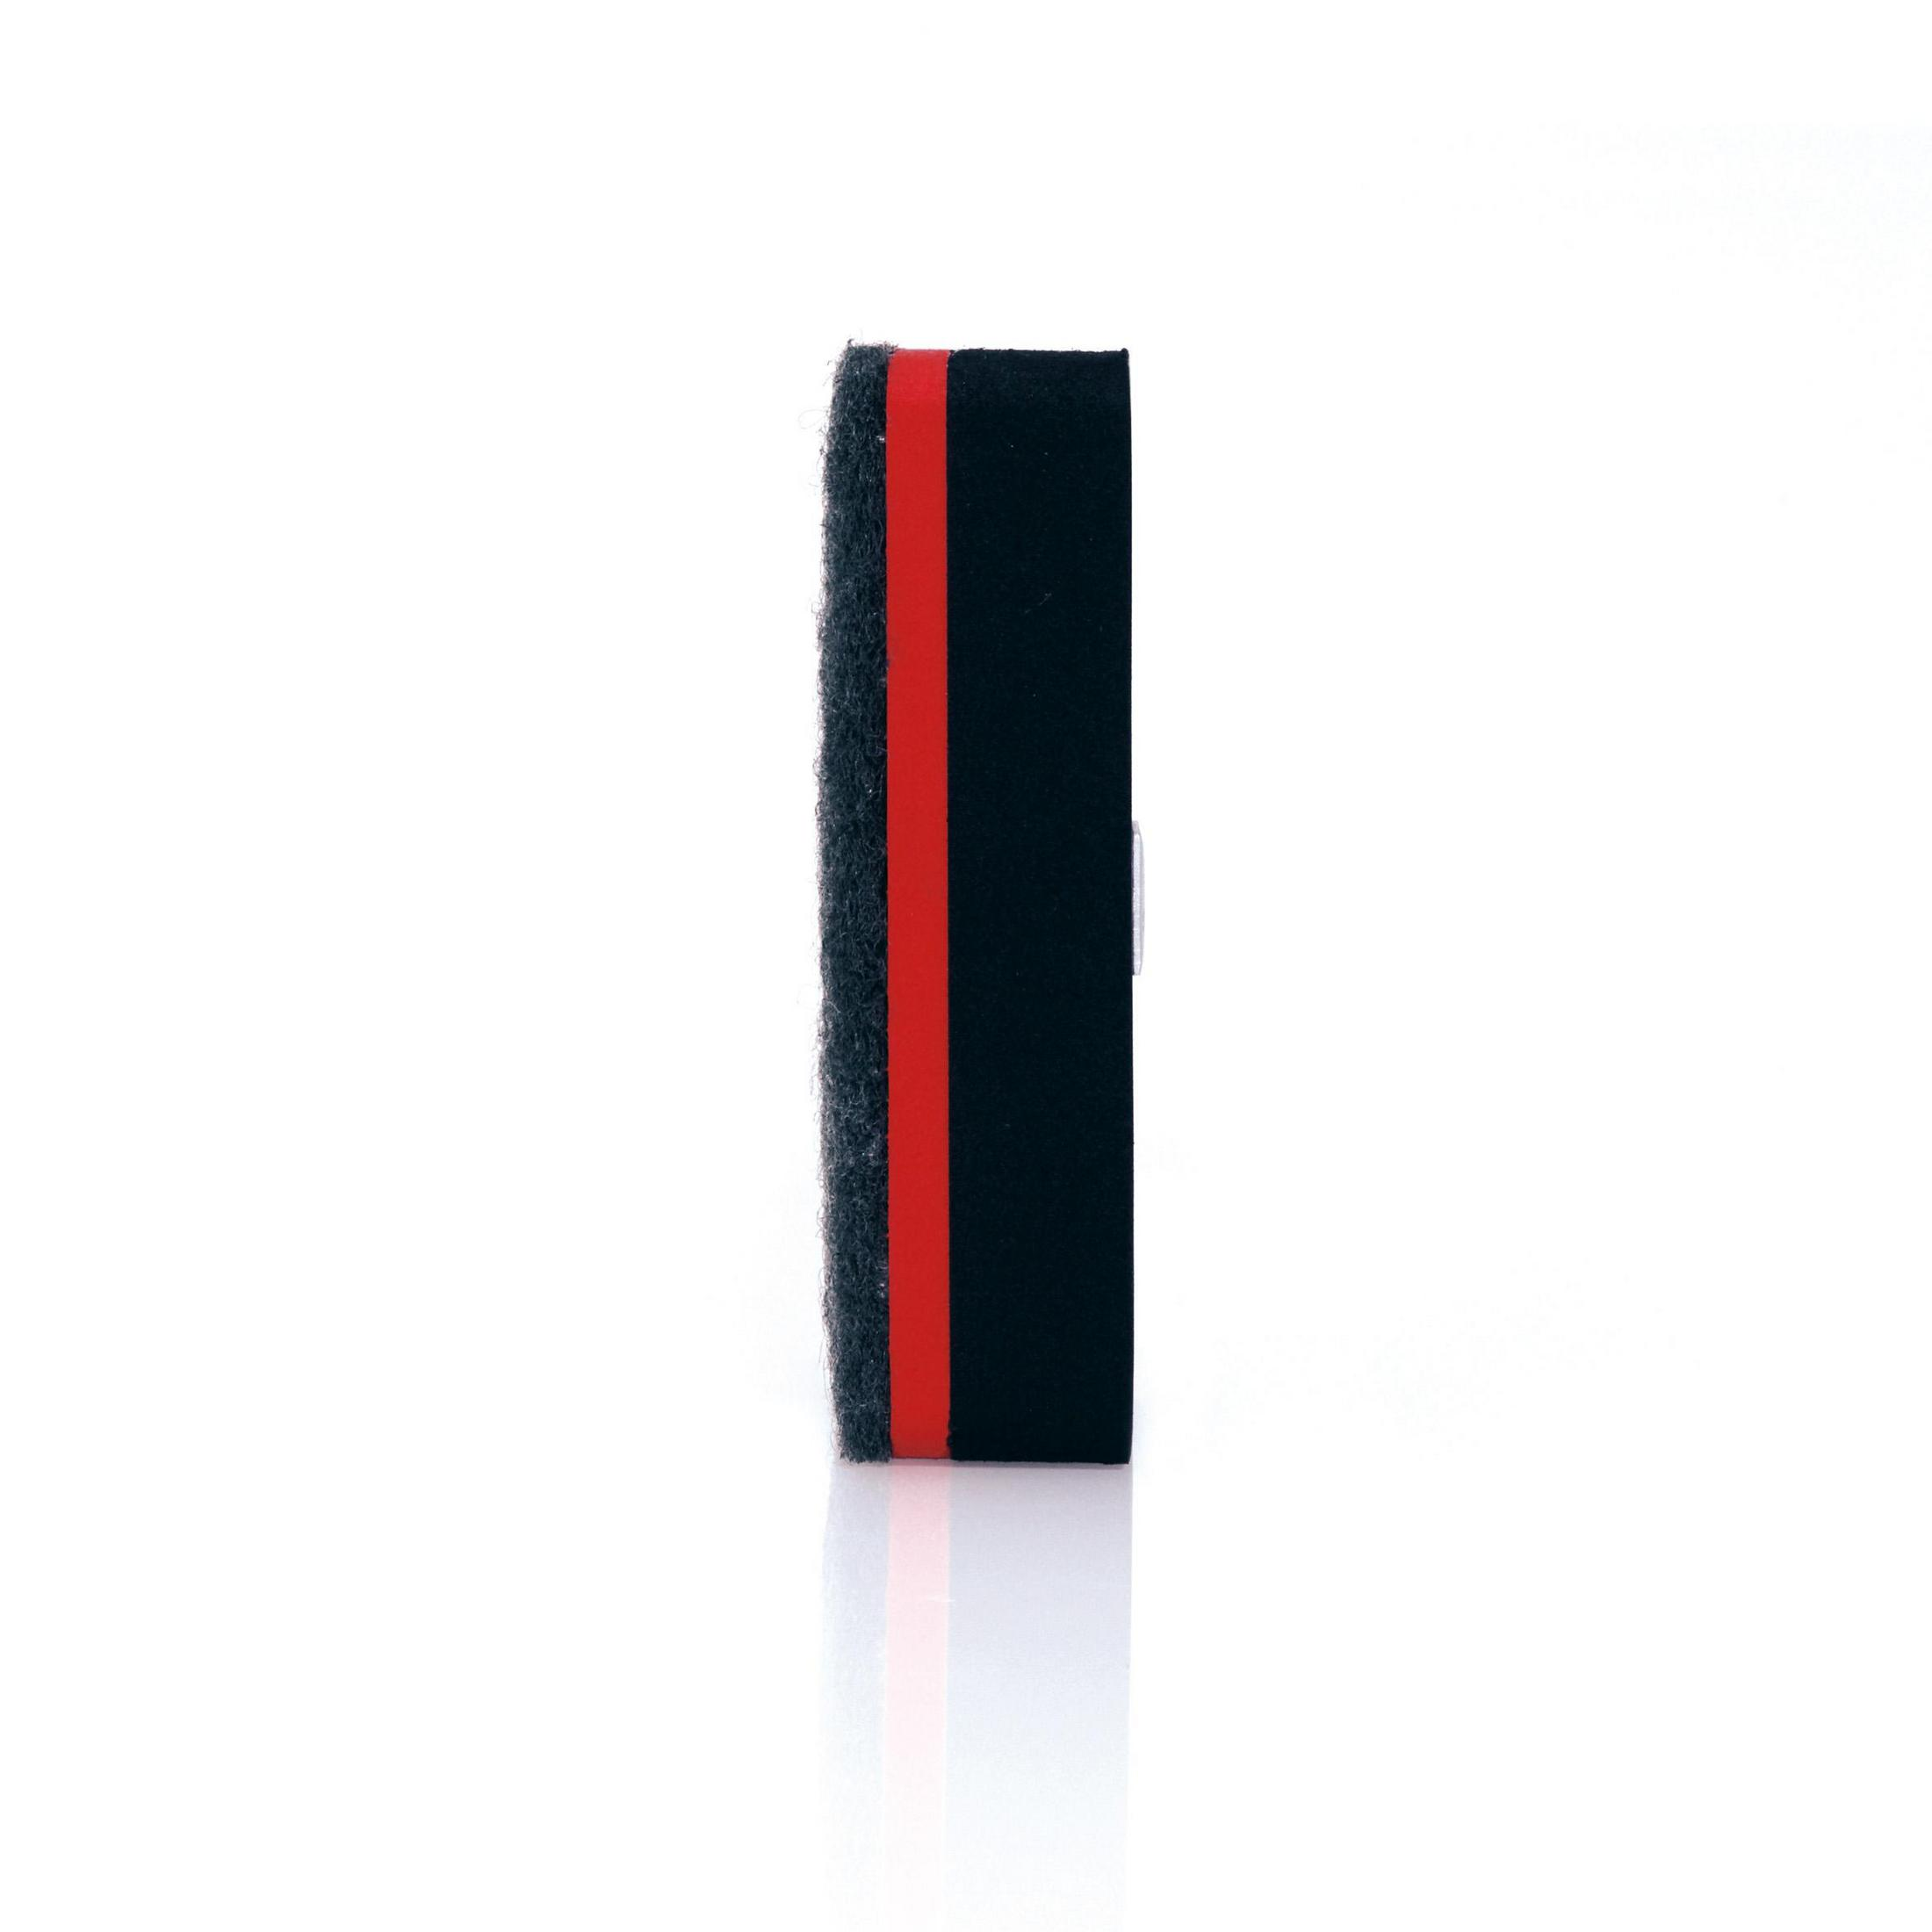 Eraser, GL187 1ST BOARD-ERASER SCHWARZ Schwarz/Rot 90X45X26MM SIGEL Board